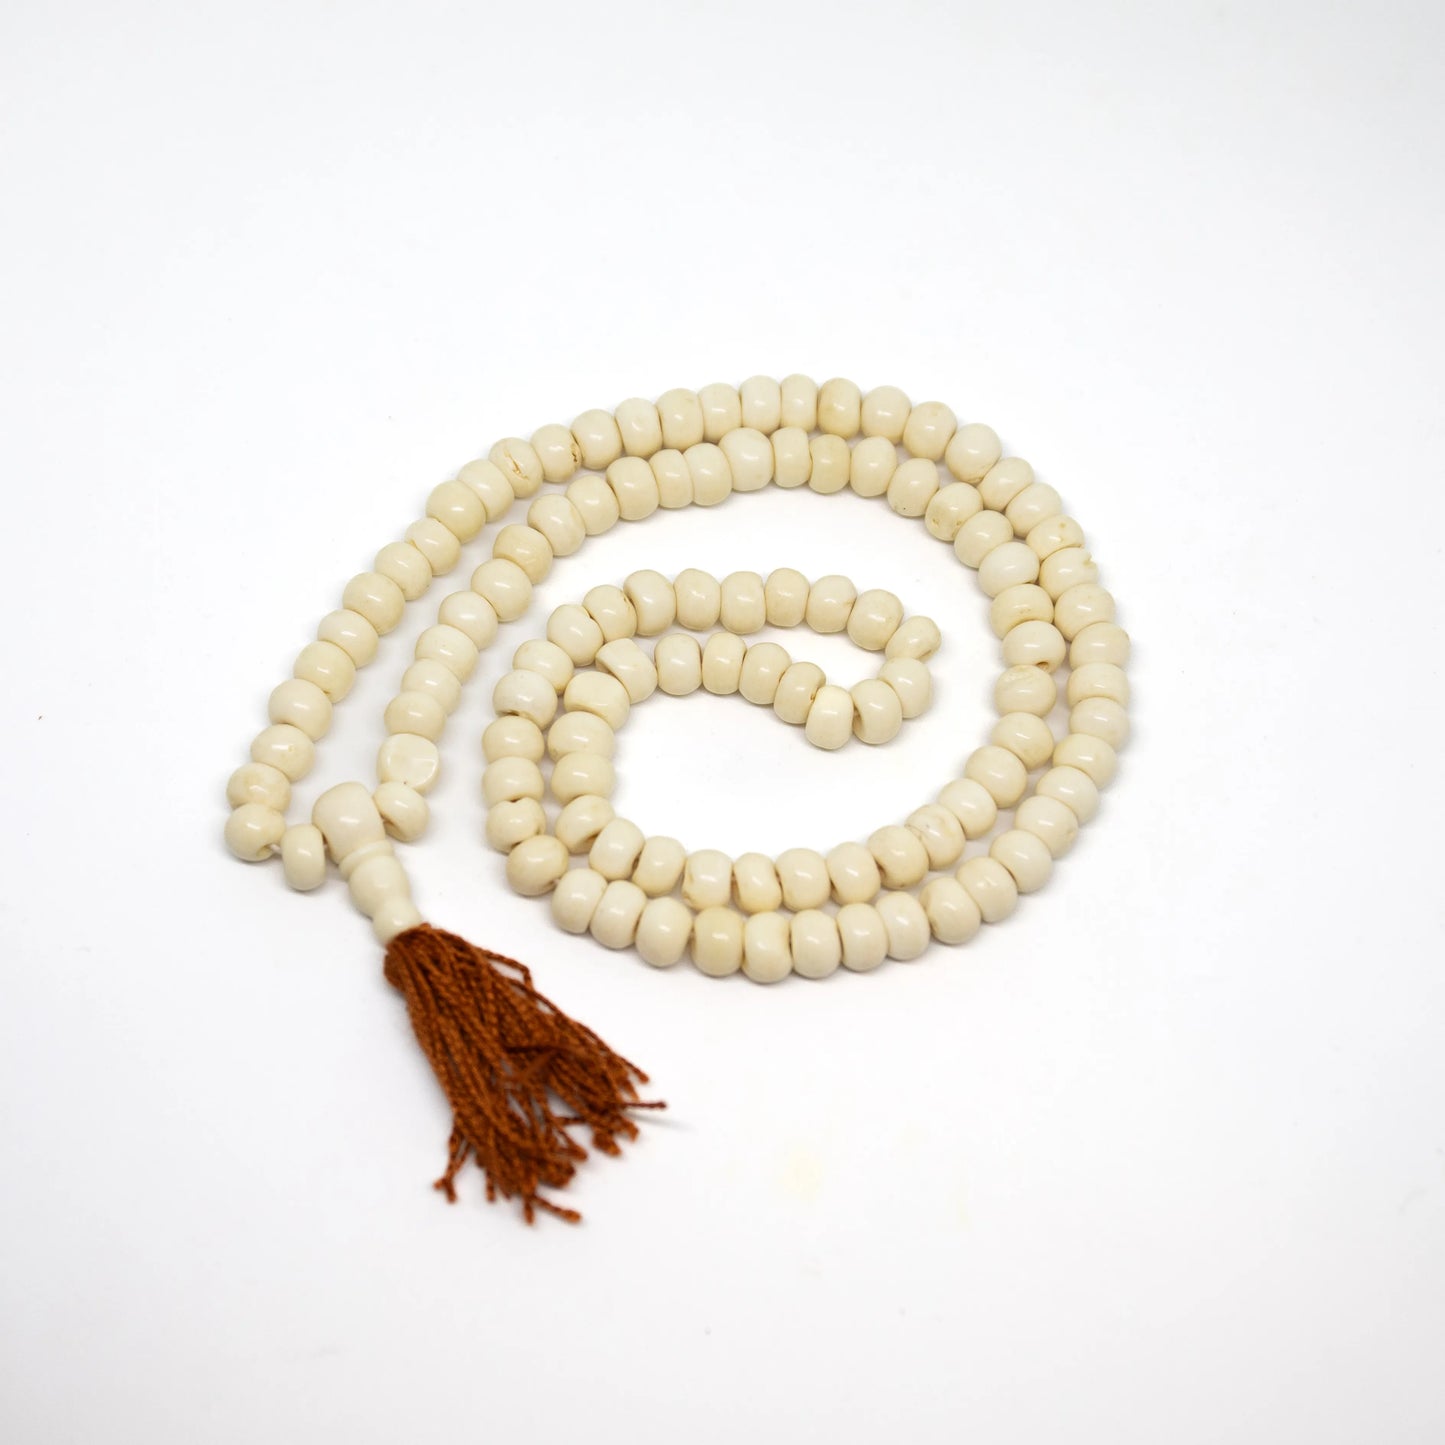 Yak Bone Tibetan 108 Bead Mala Prayer Beads - 6x8mm (1 Pack)